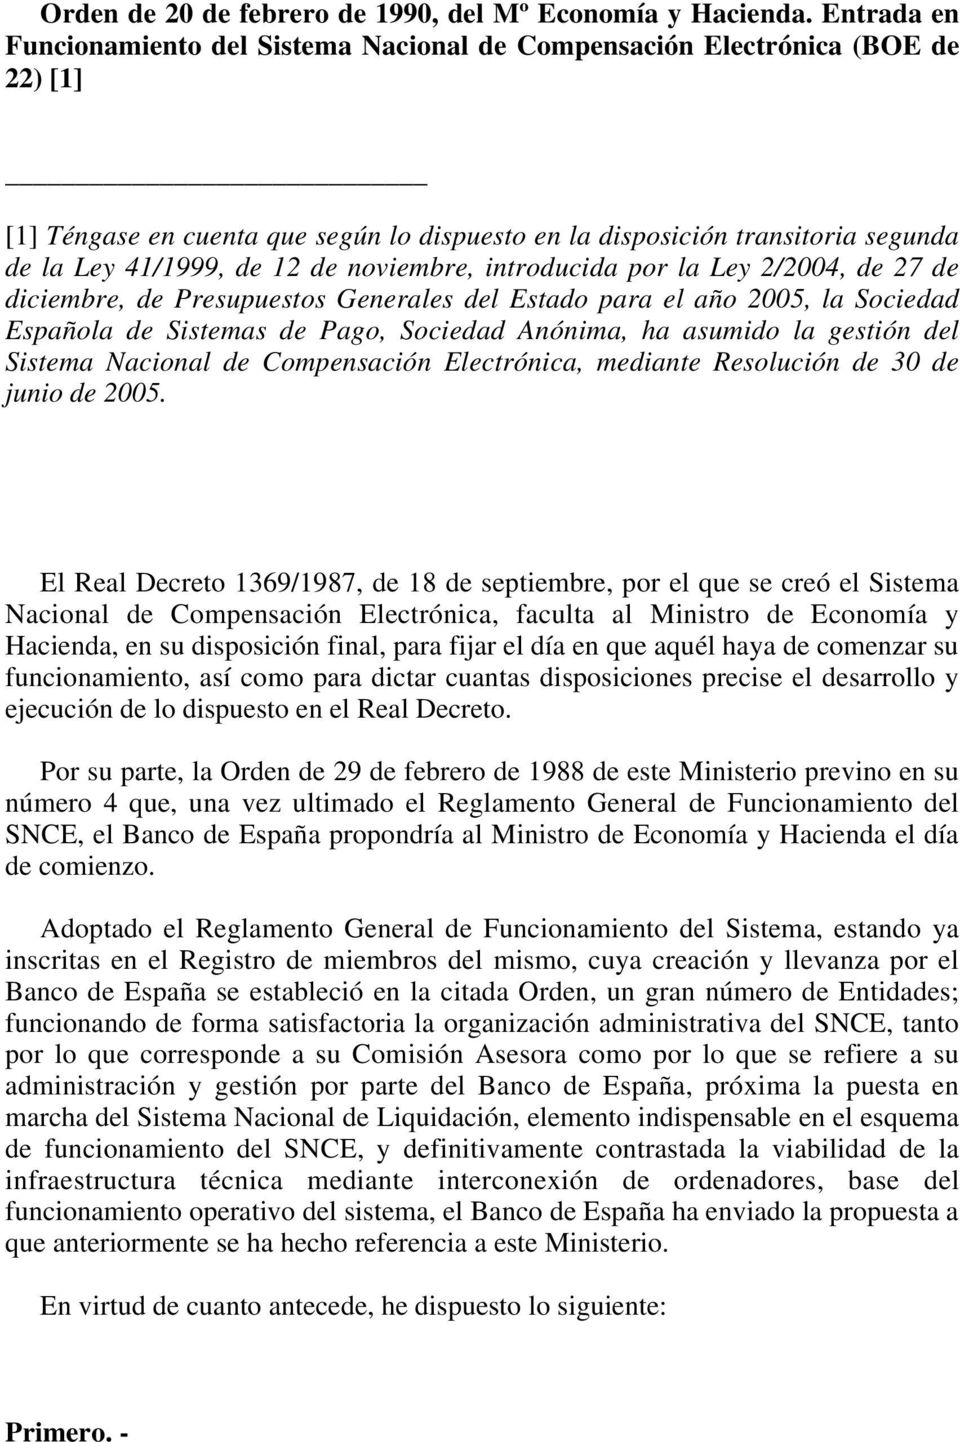 de noviembre, introducida por la Ley 2/2004, de 27 de diciembre, de Presupuestos Generales del Estado para el año 2005, la Sociedad Española de Sistemas de Pago, Sociedad Anónima, ha asumido la